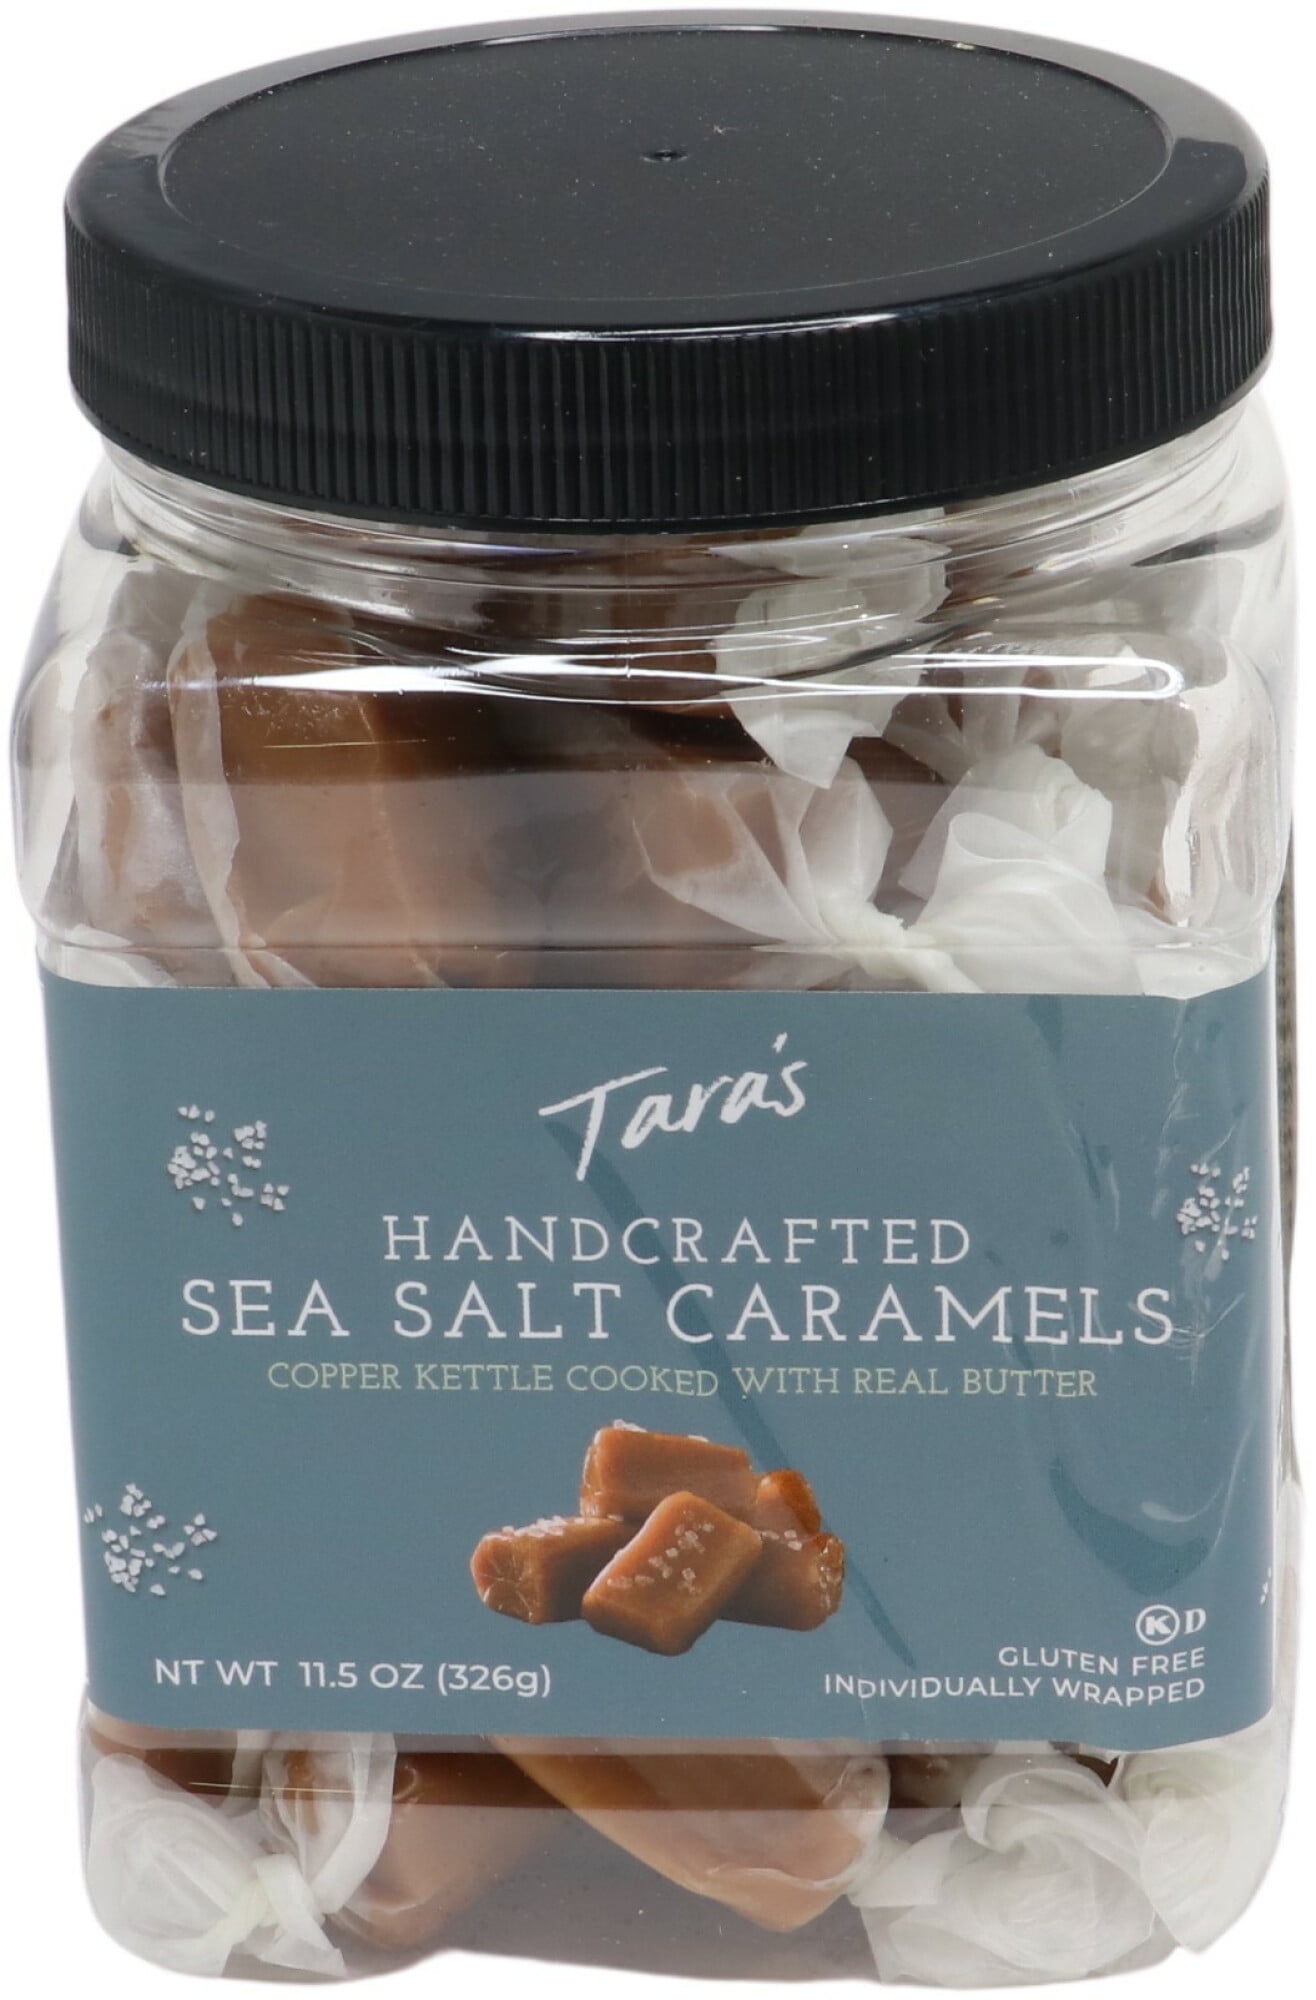 Tara's Handcrafted Sea Salt Caramels Caramel BIUB020921 - Walmart.com